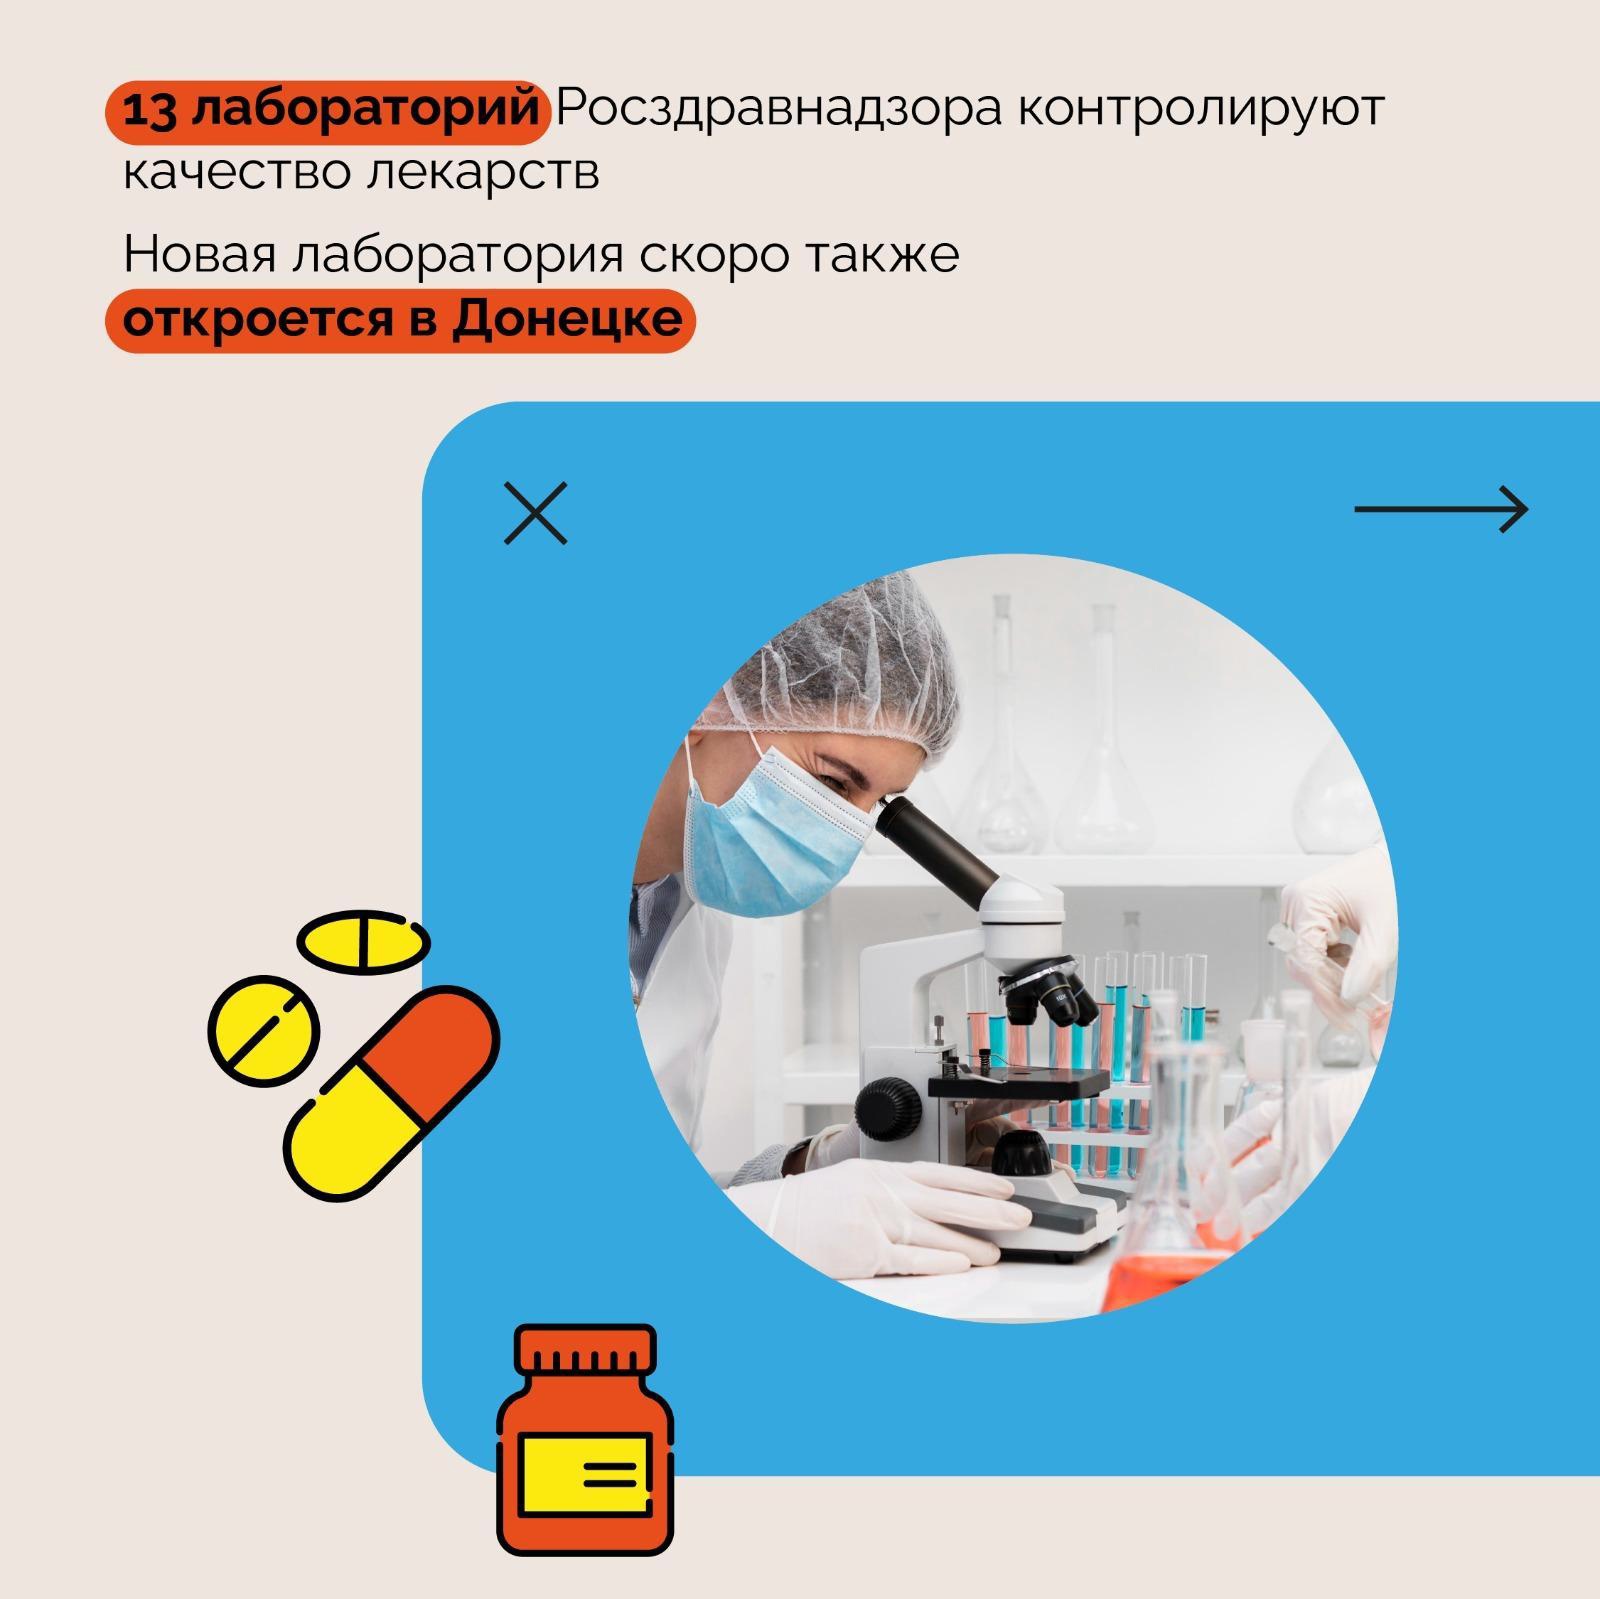 Доля российских лекарственный препаратов на рынке – 70%. За последние три года она возросла на 10% и продолжает увеличиваться. 